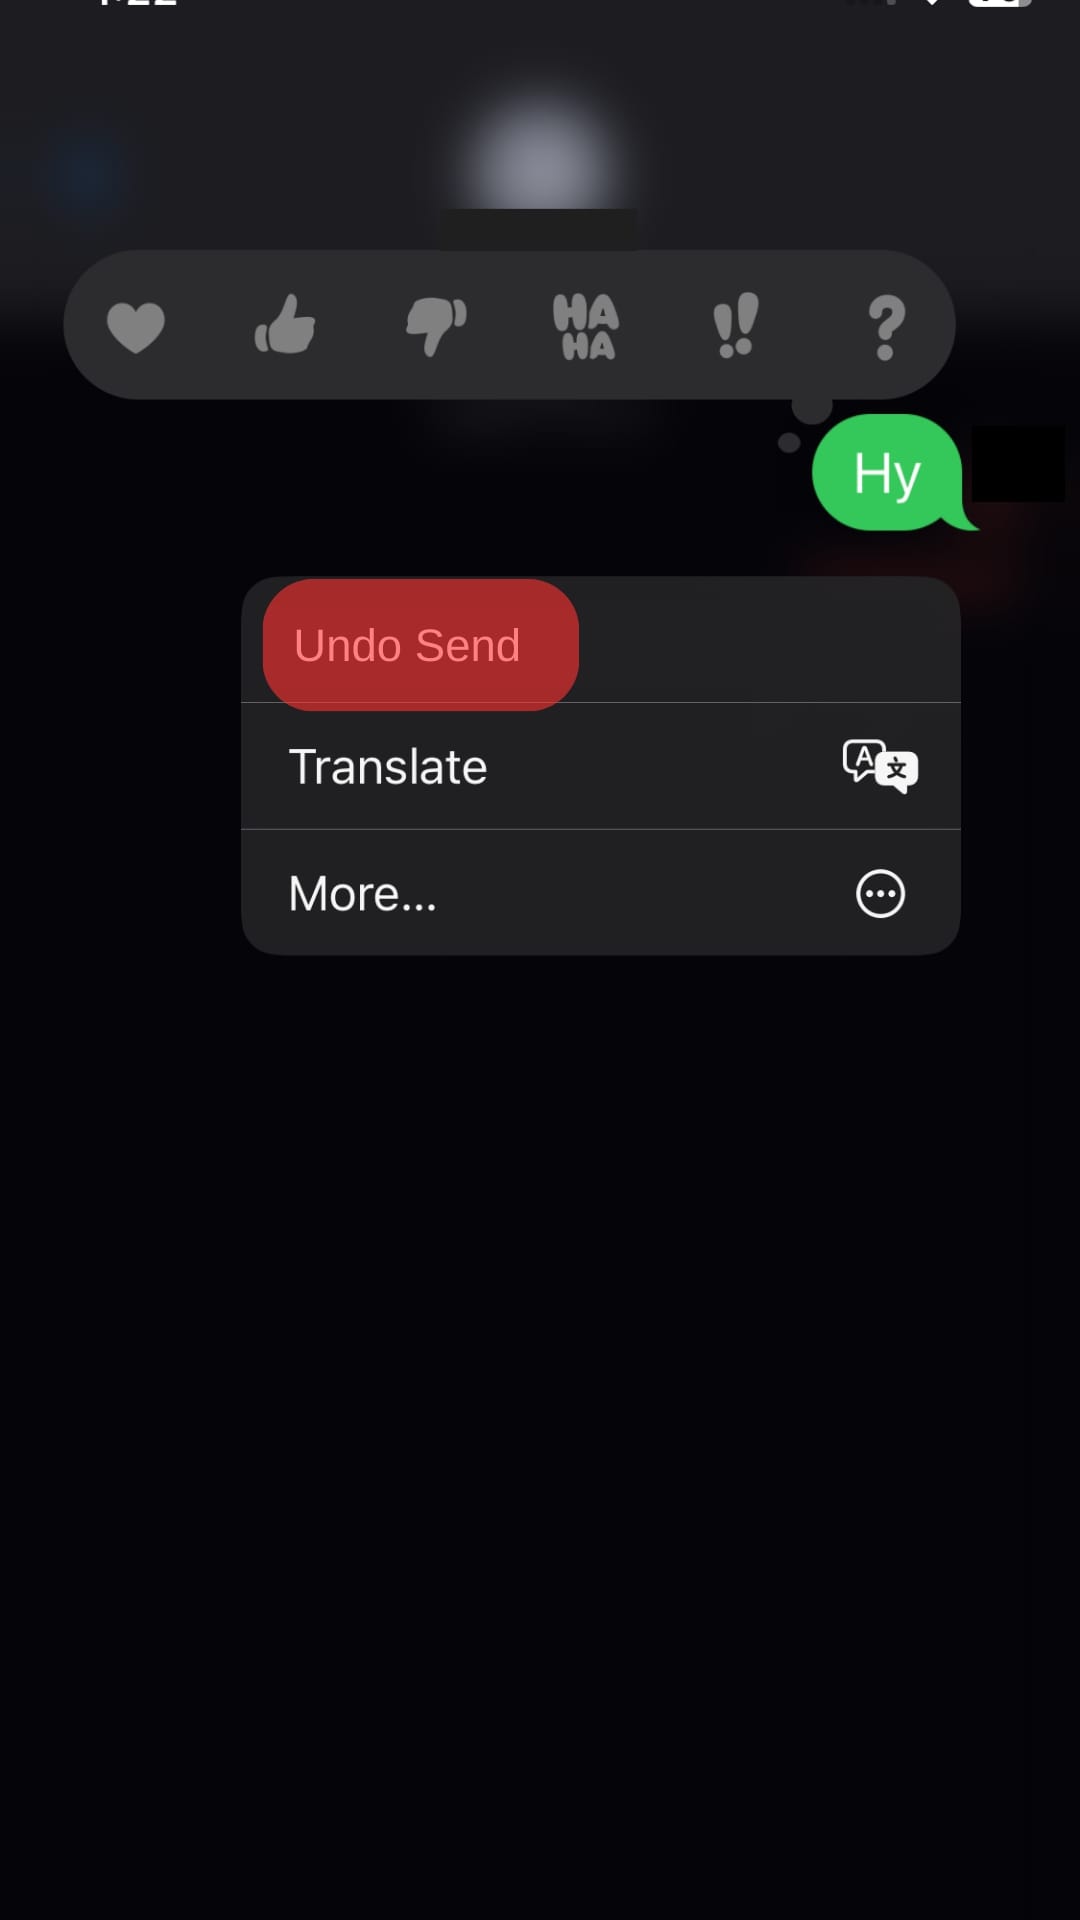 Click The Undo Send Option